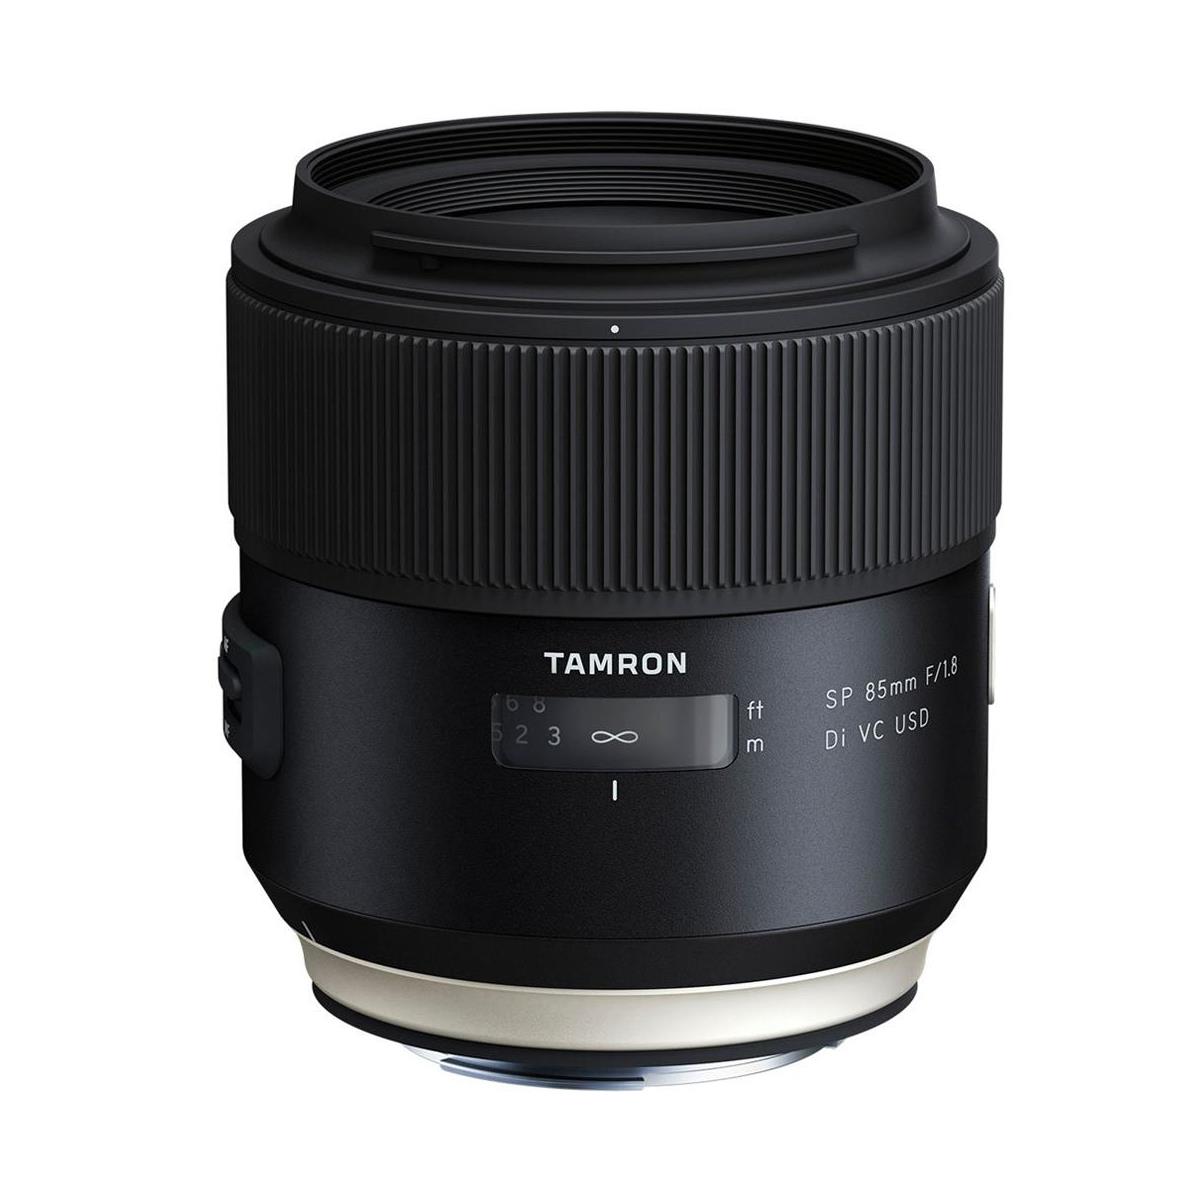 Image of Tamron SP 85mm f/1.8 Di VC USH Lens for Nikon F Mount